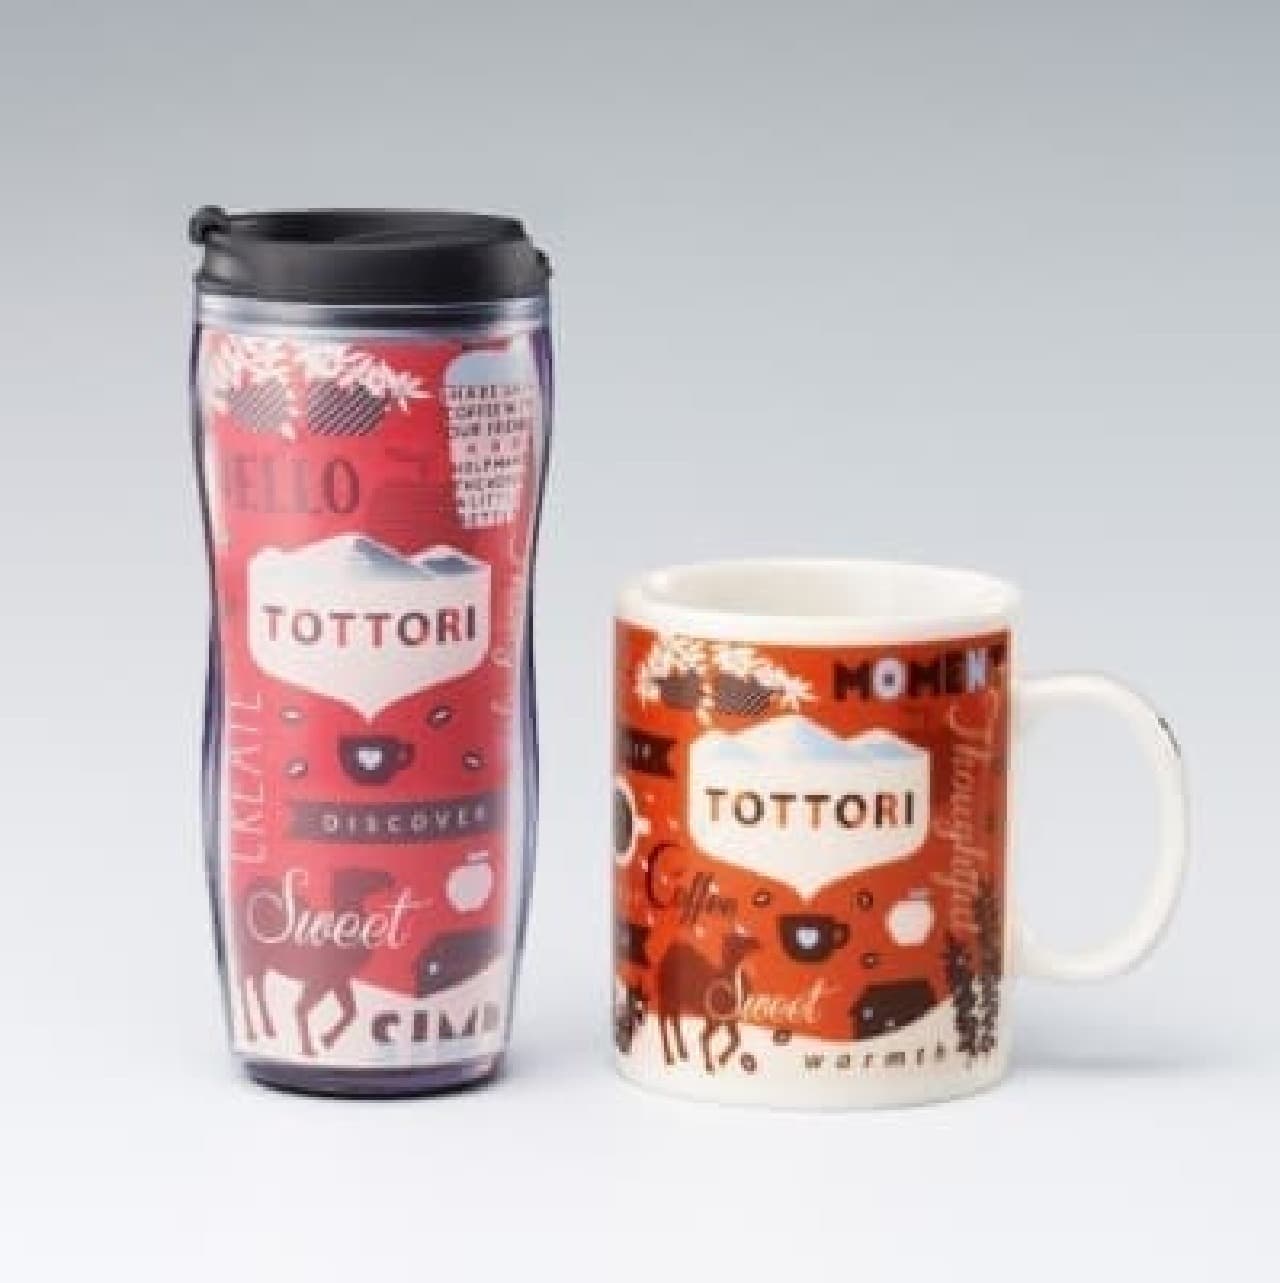 Limited tumbler & mug of "Tottori pattern"